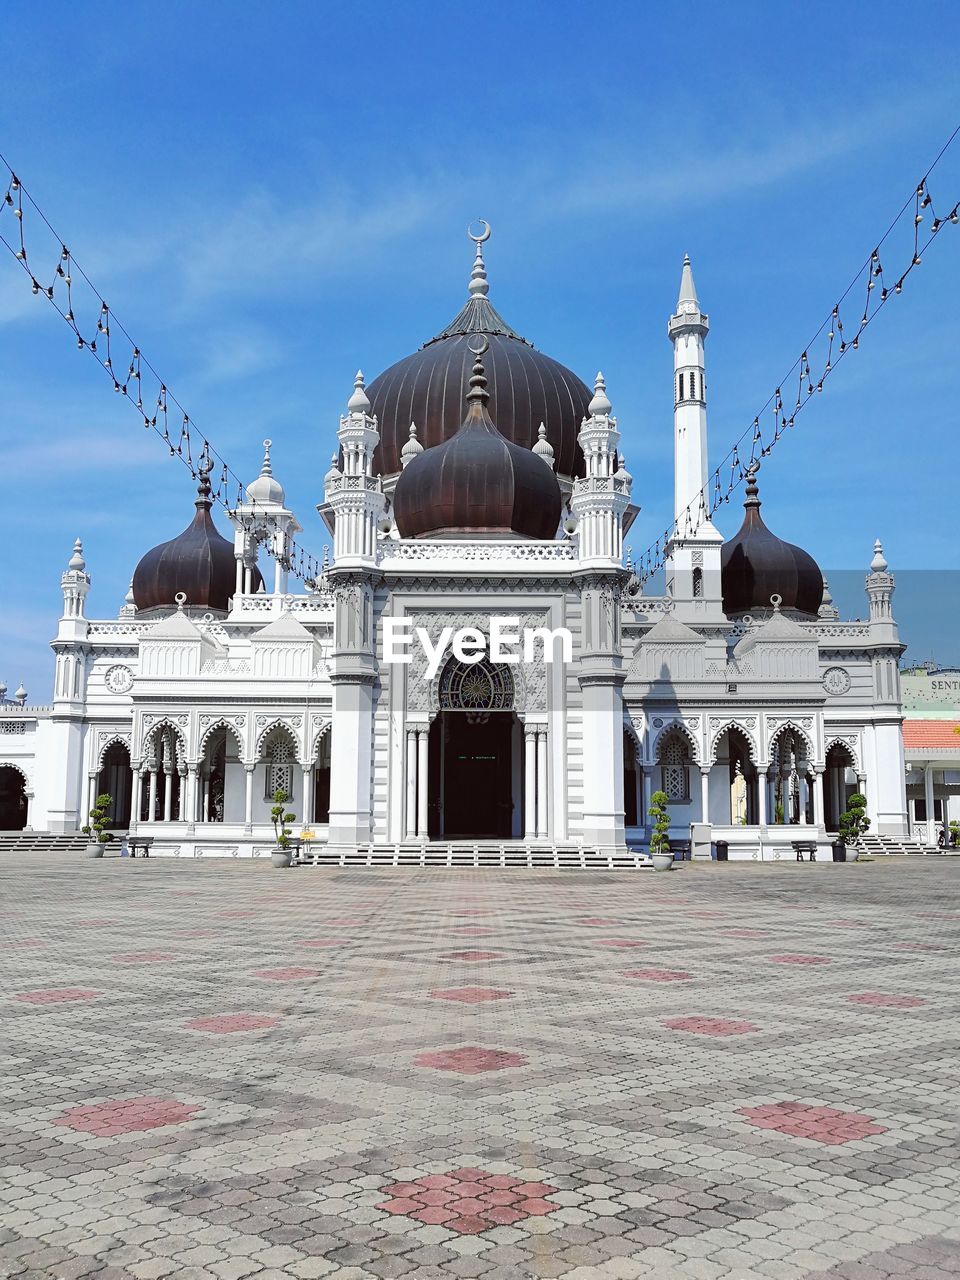 Zahir mosque, alor setar kedah